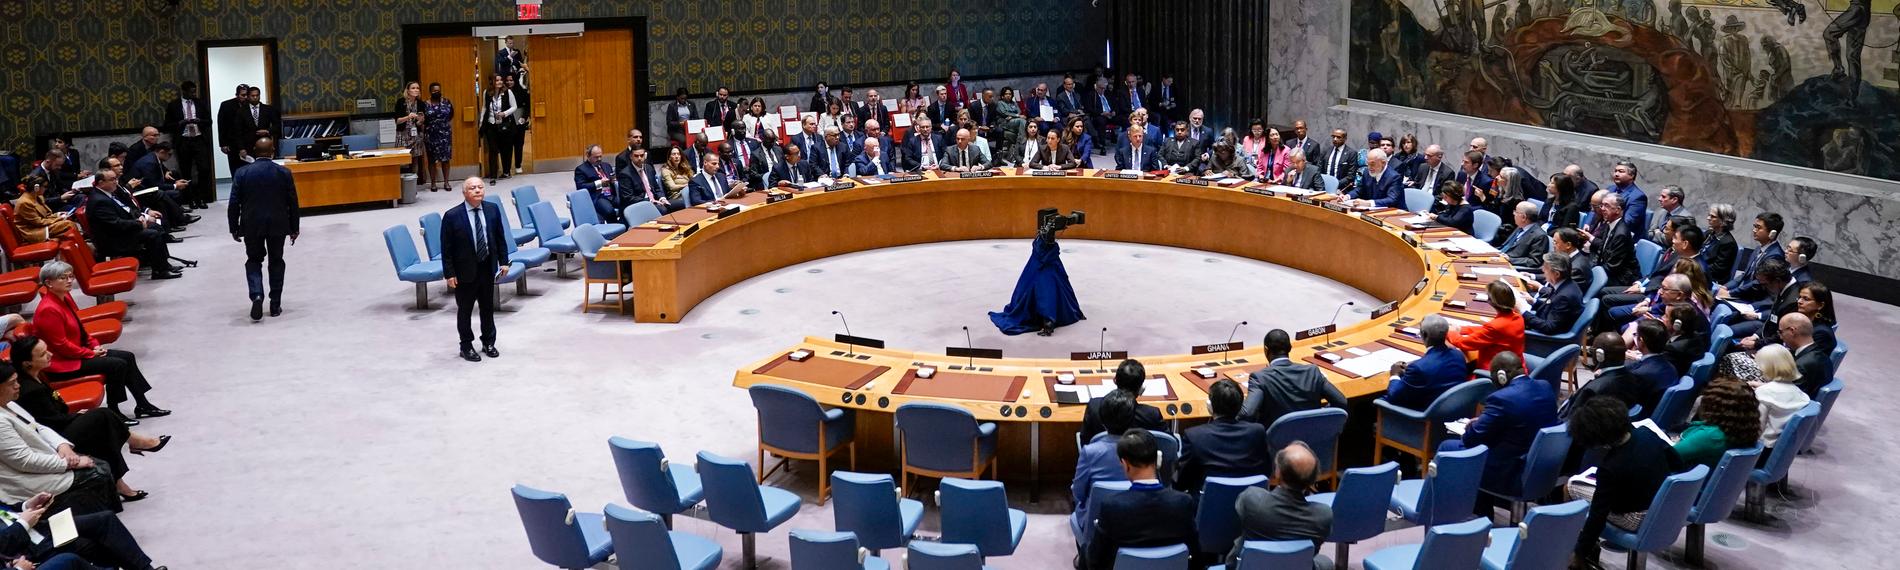 Teilnehmer während einer Sitzung des UN-Sicherheitsrates in New York.